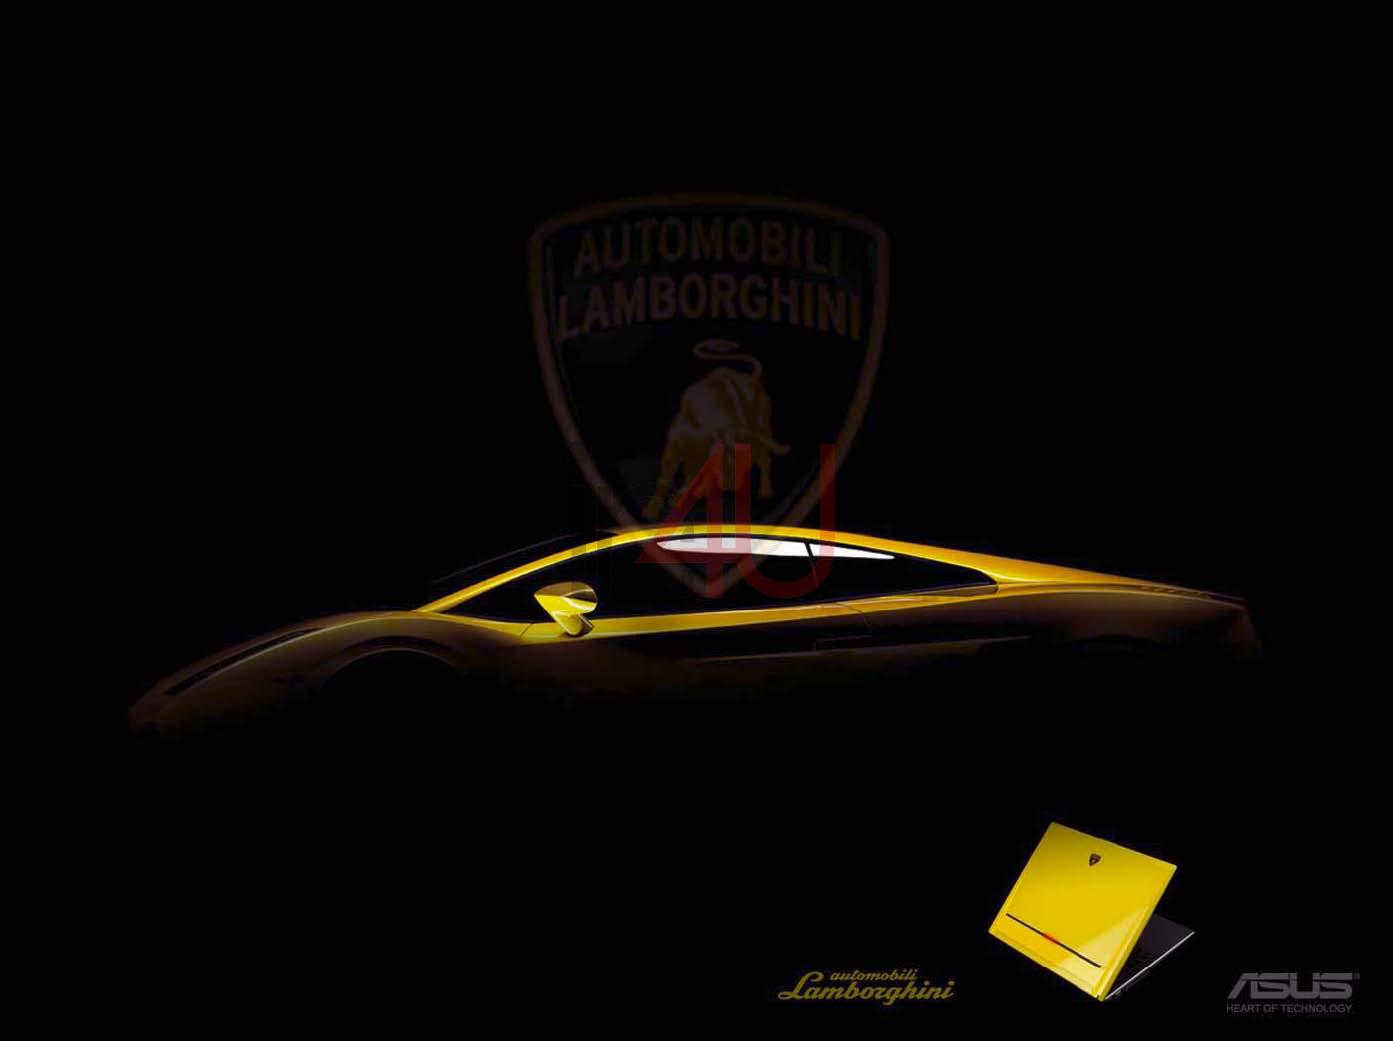 Asus Lamborghini Series HD Wallpaper